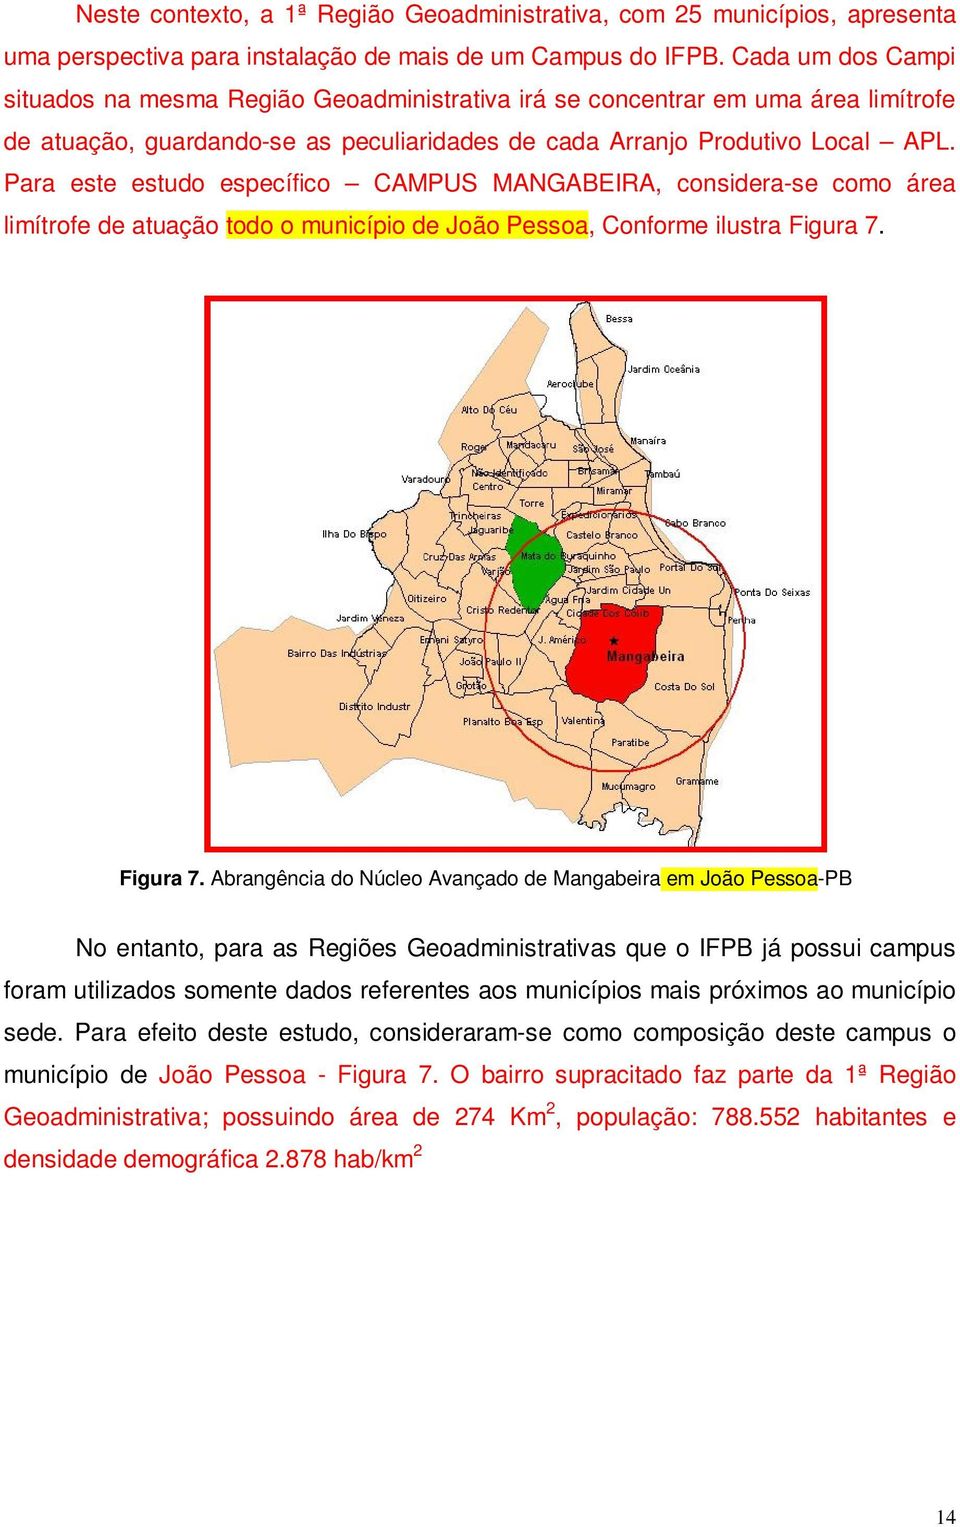 Para este estudo específico CAMPUS MANGABEIRA, considera-se como área limítrofe de atuação todo o município de João Pessoa, Conforme ilustra Figura 7.